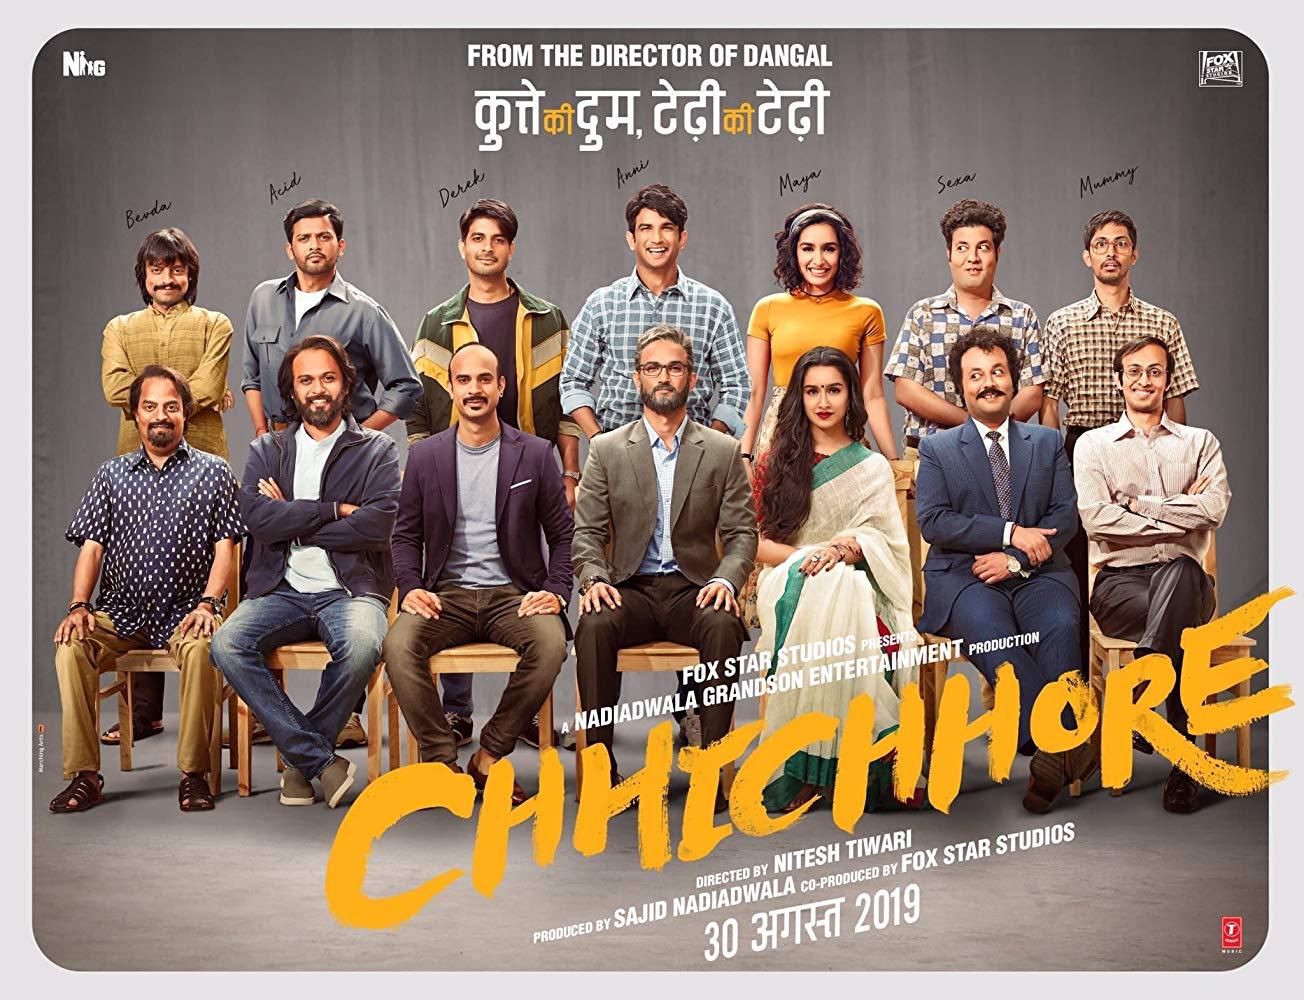 مشاهدة فيلم Chhichhore (2019) مترجم